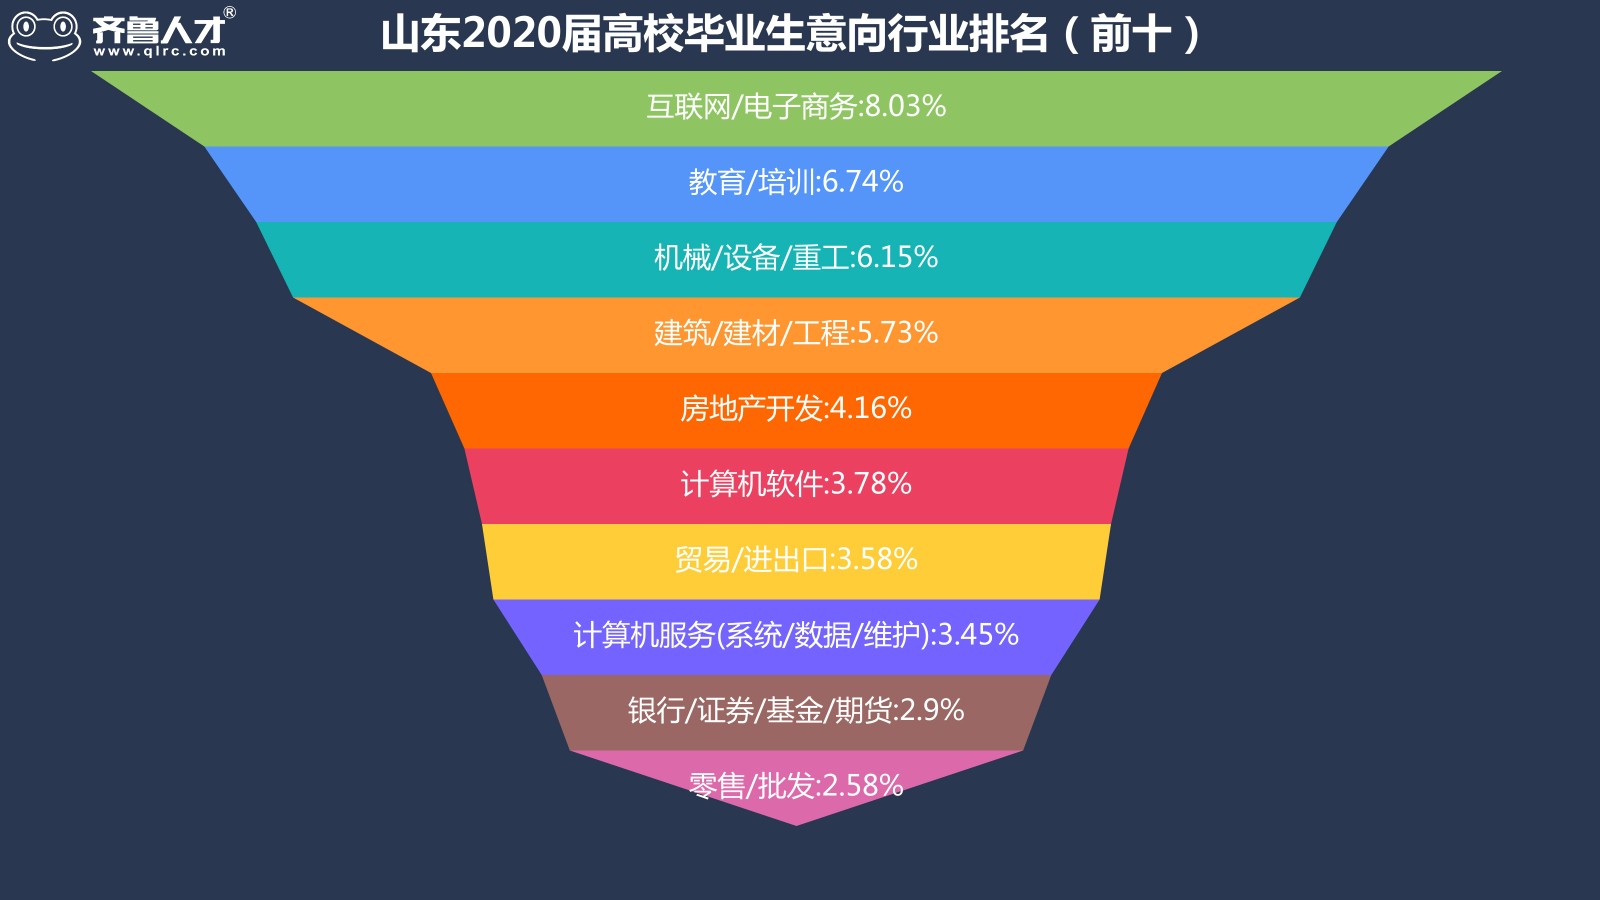 齊魯人才網濟南成為山東2020屆高校畢業生就業地首選，平均薪酬達5986元圖3.jpg